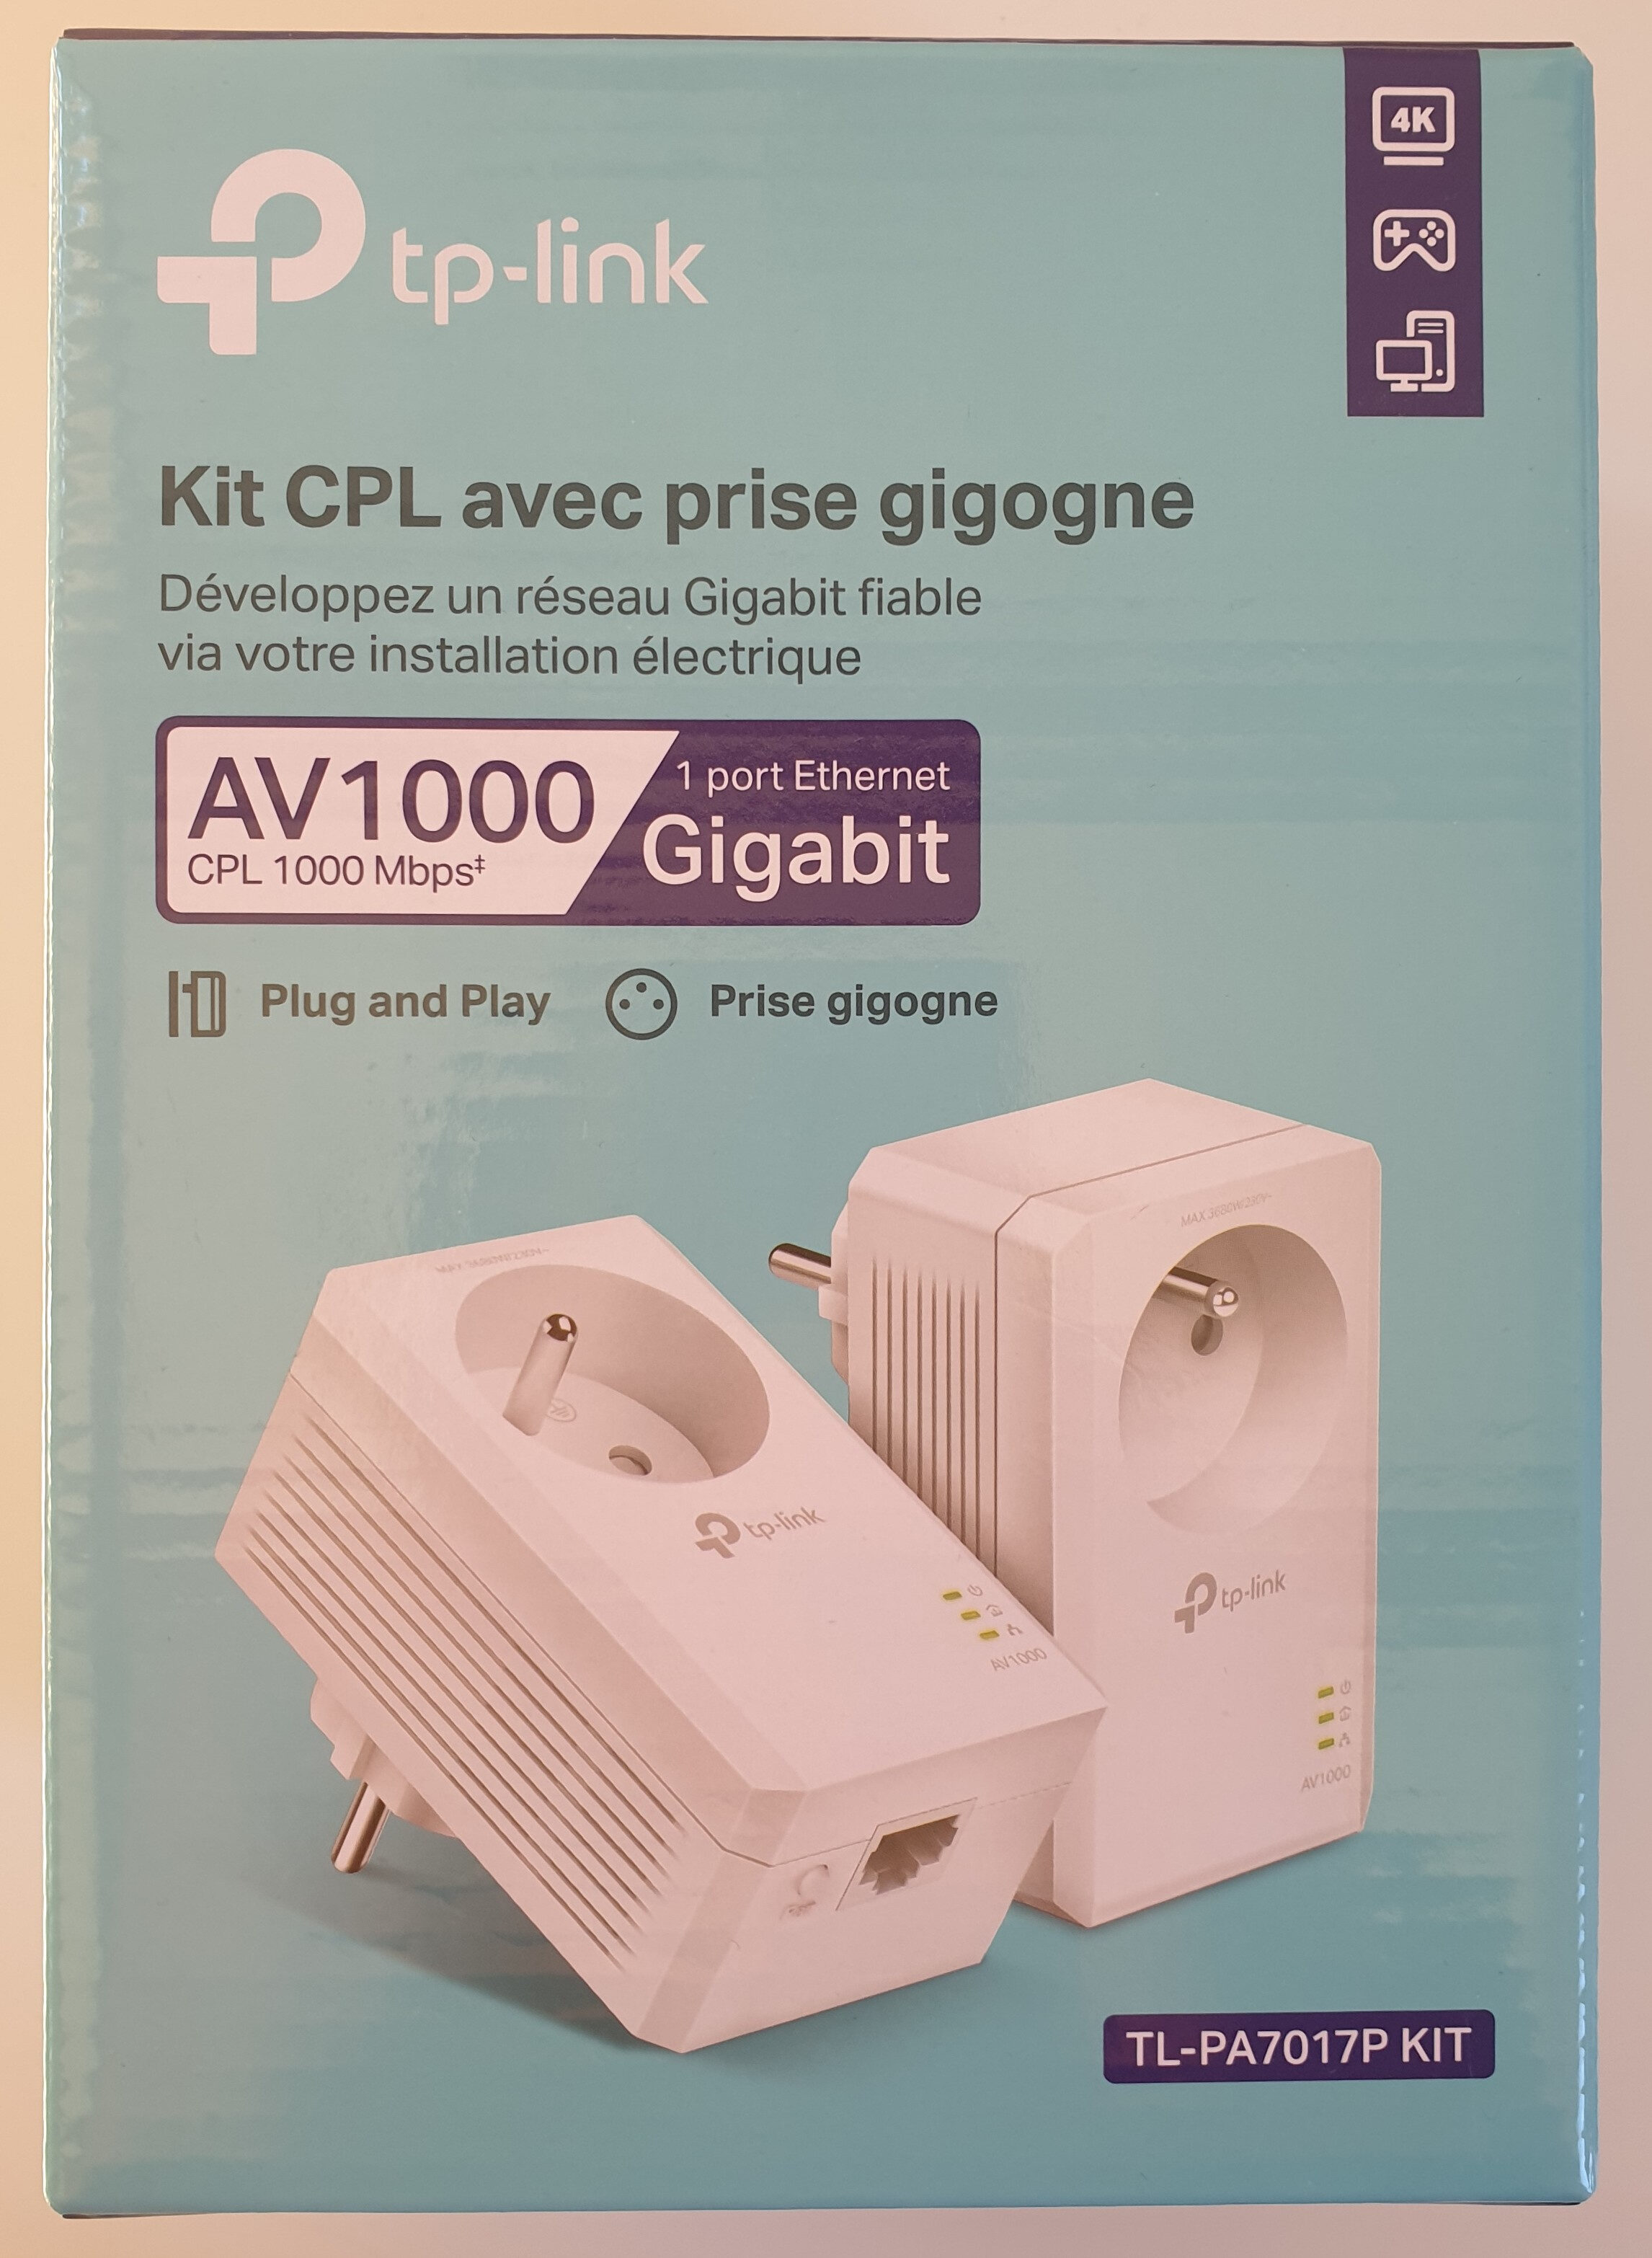 Kit CPL avec prise gigogne. AV 1000. TL-PA7017P KIT - Product - fr